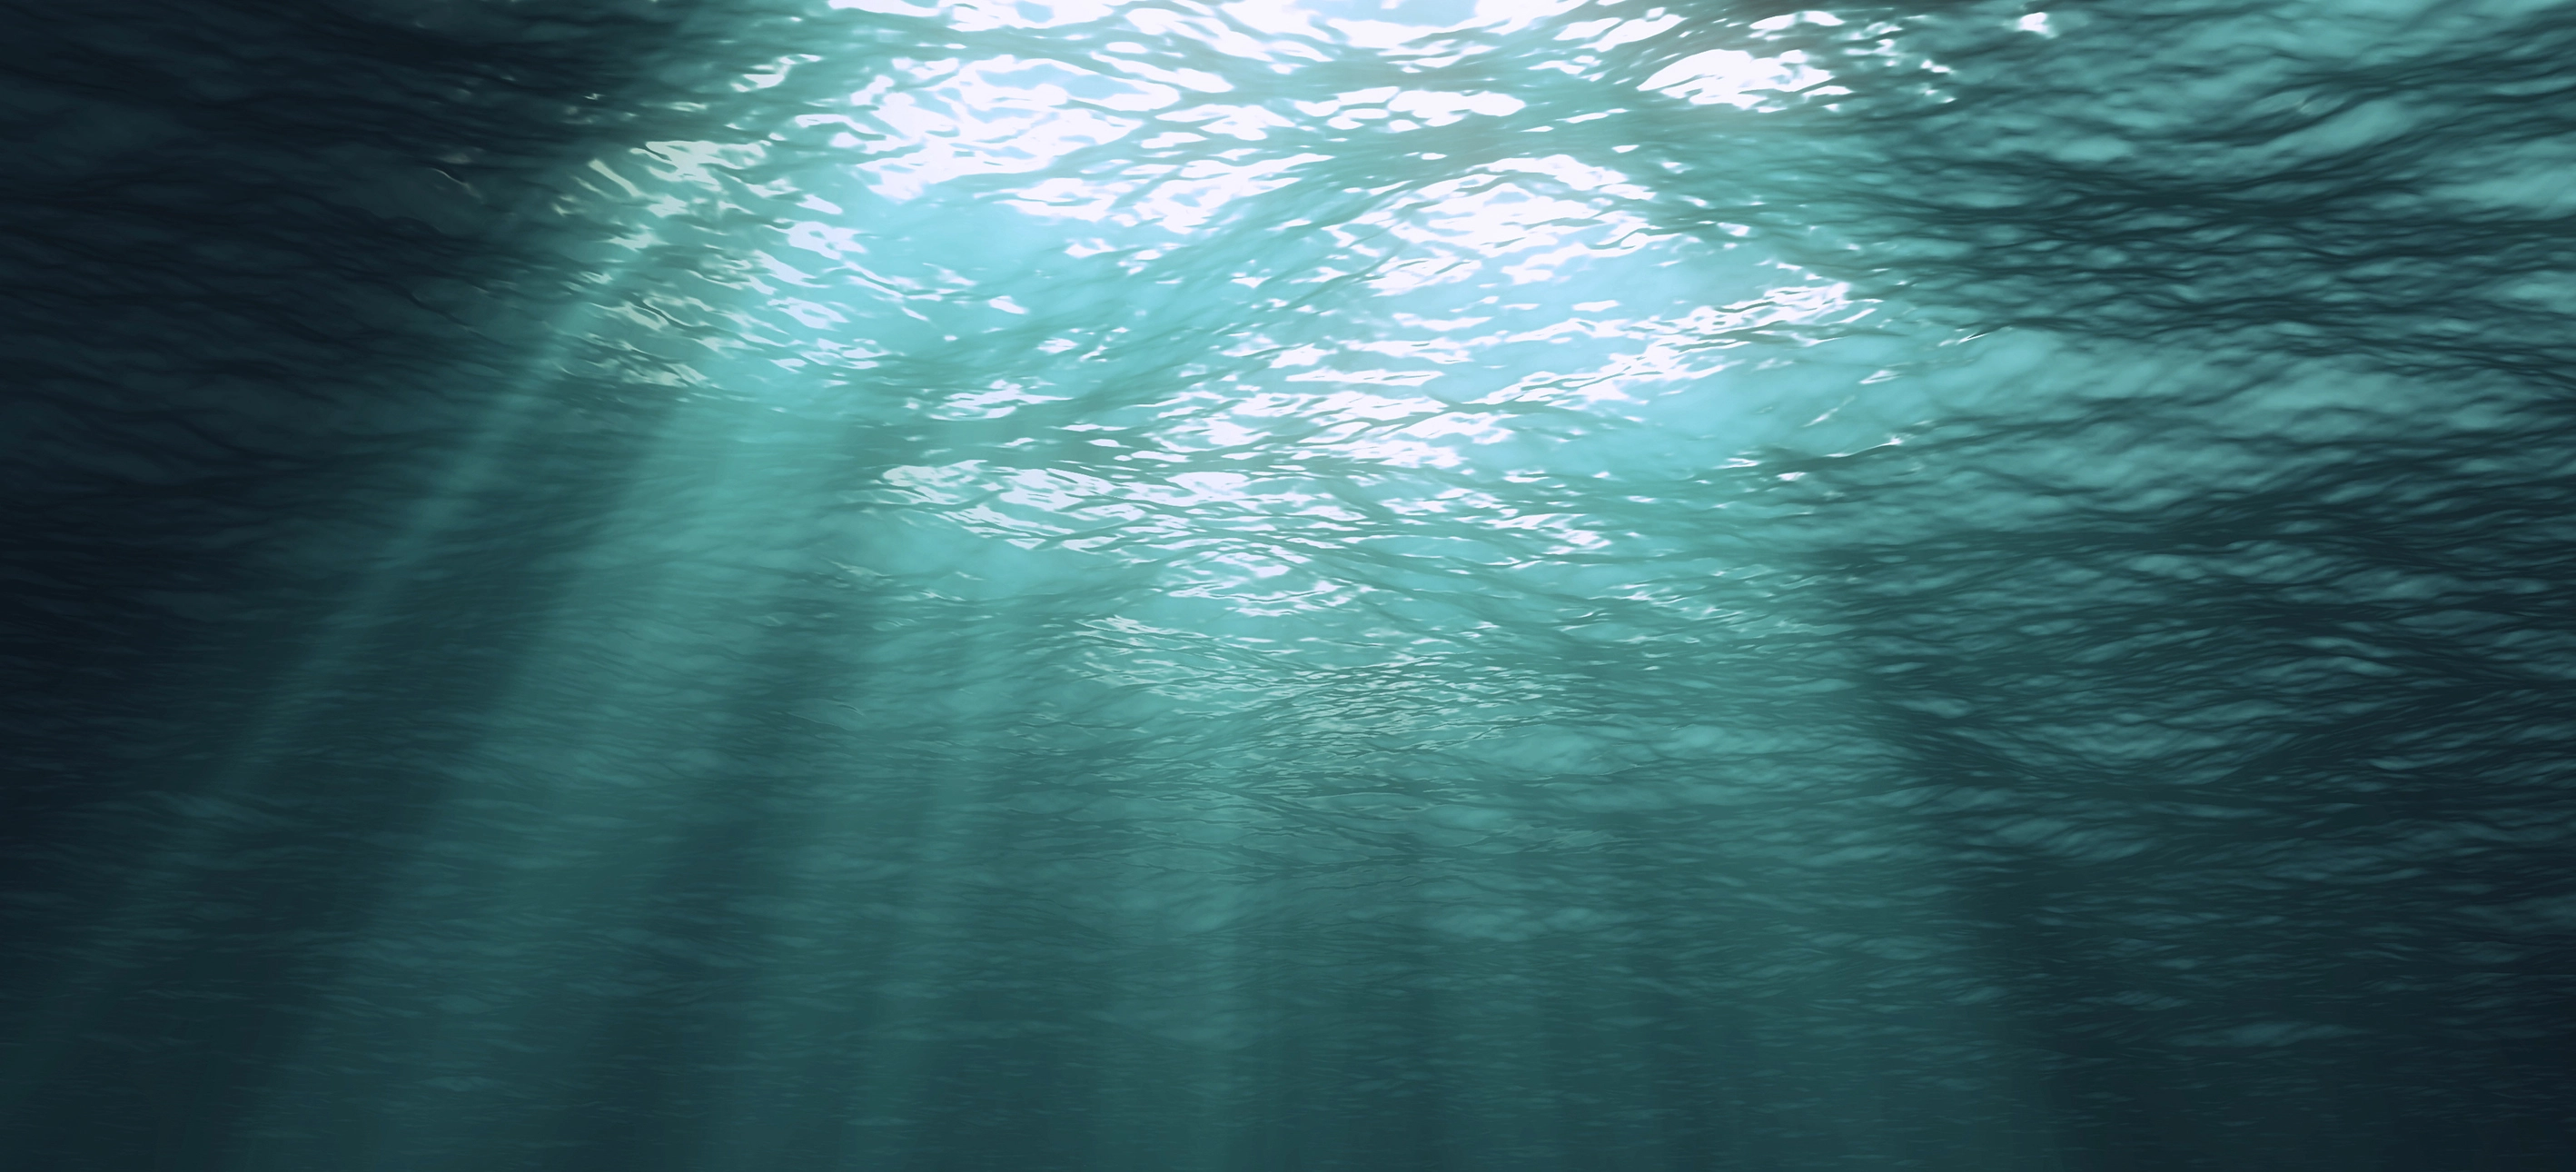 Fotografia subaquática, mostrando a luz solar entrando no mar.